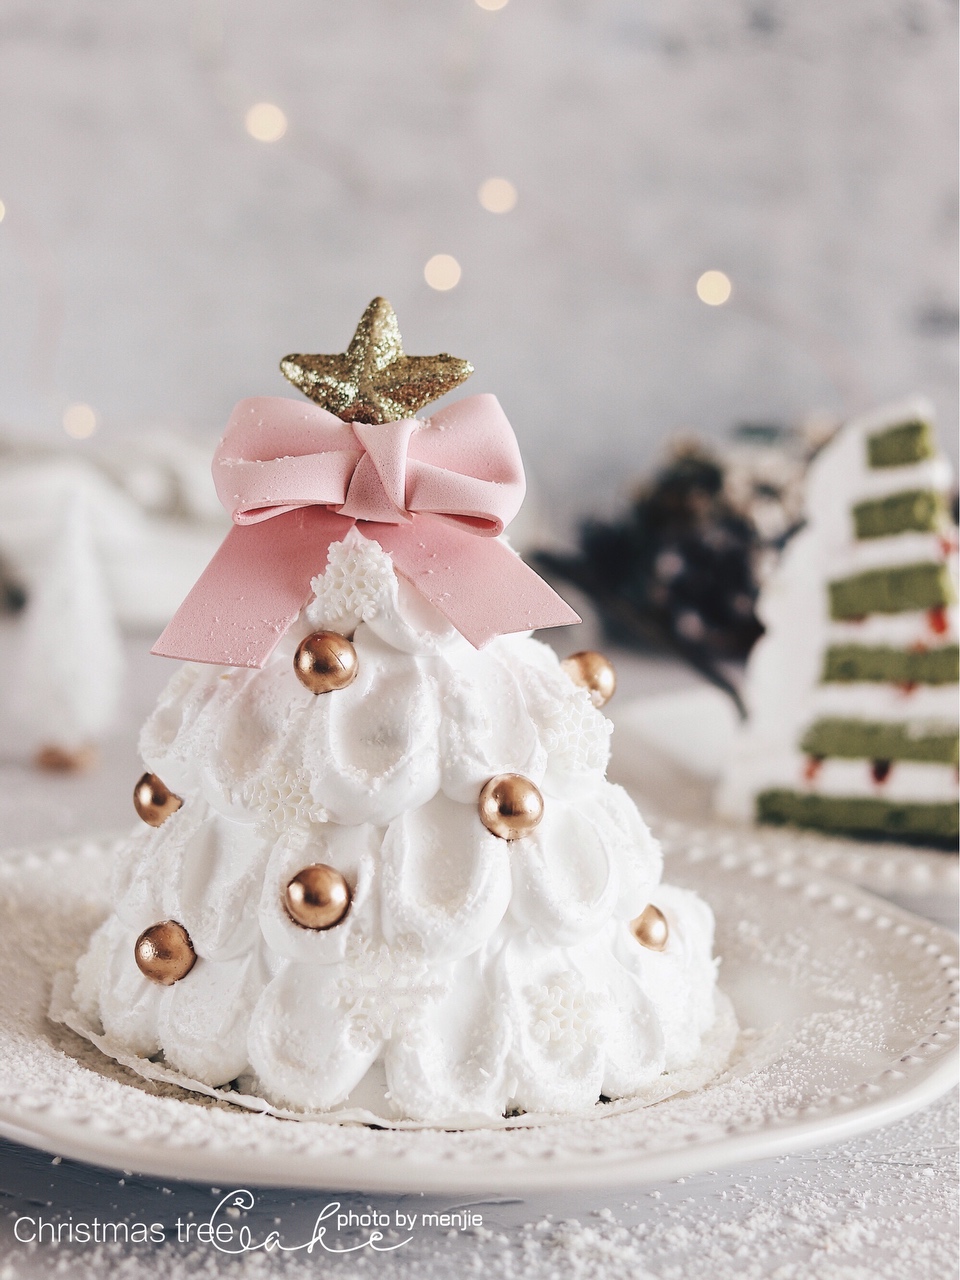 可以吃的圣诞树🎄圣诞节蛋糕甜品